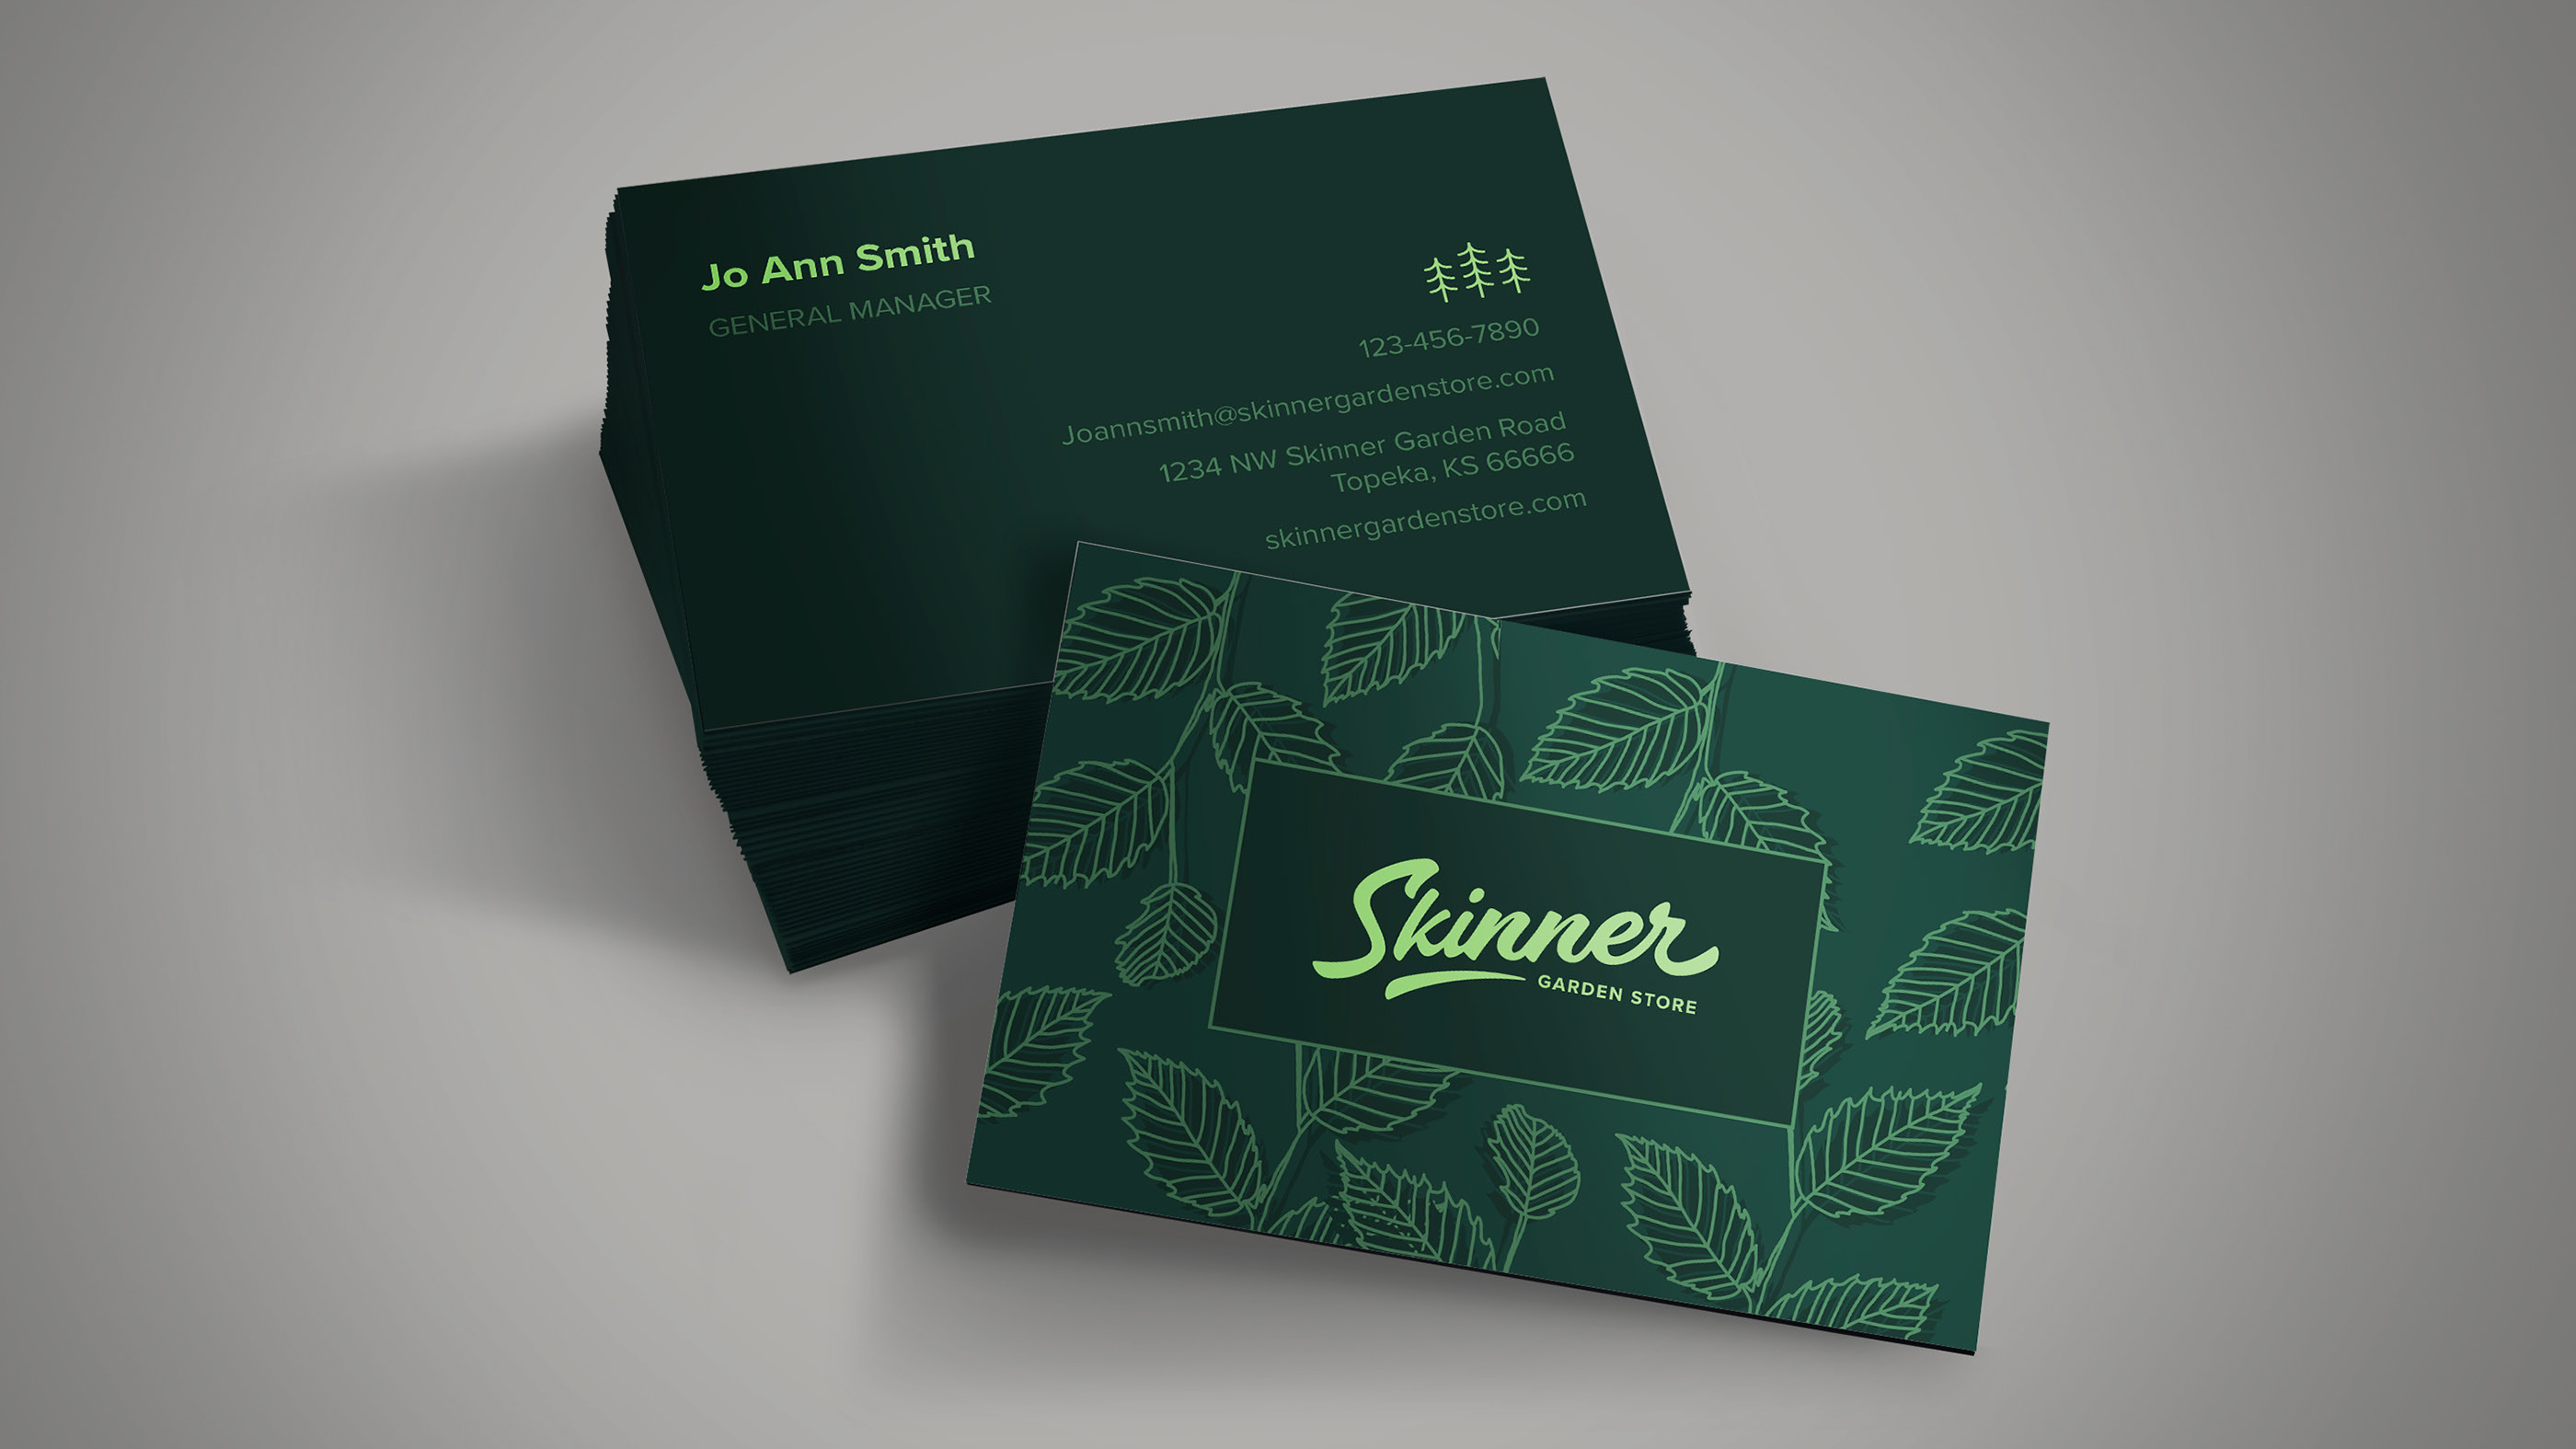 Skinner Garden Store Brand Refresh On Behance